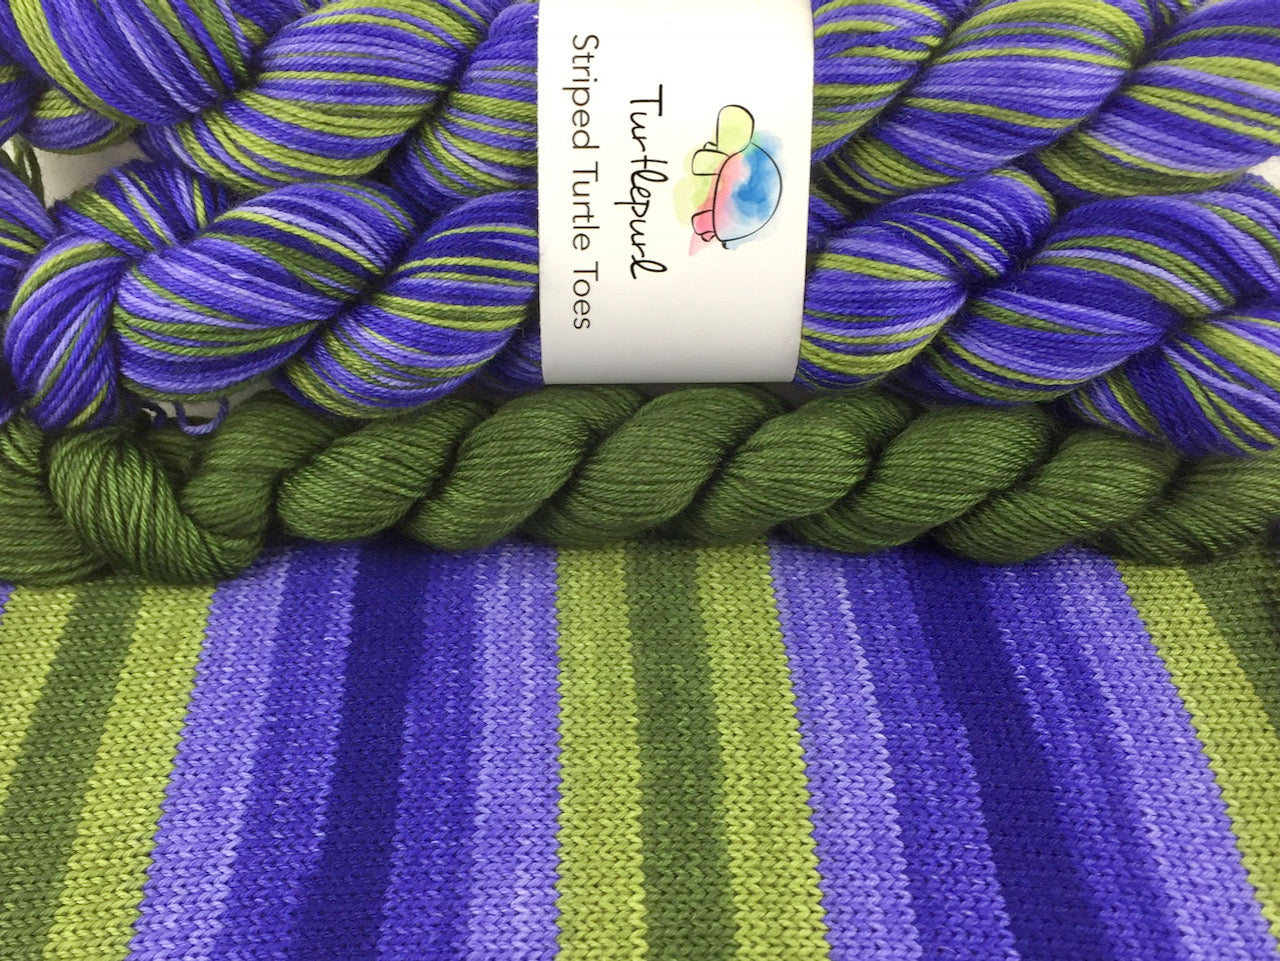 Iris self-striping sock yarn